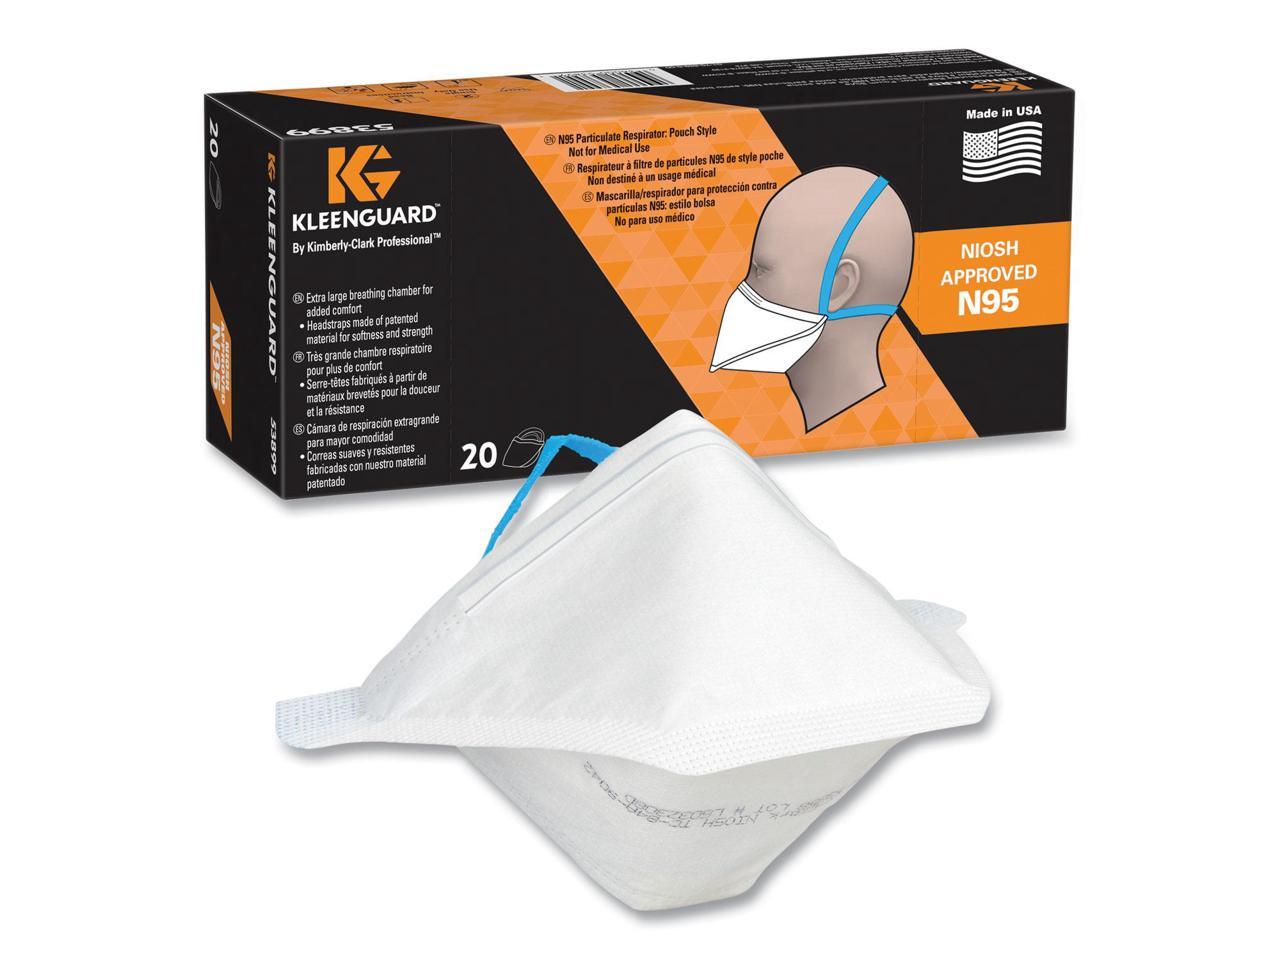 Kleenguard N95 Respirator Regular Size 20/Box 53899 - image 1 of 7